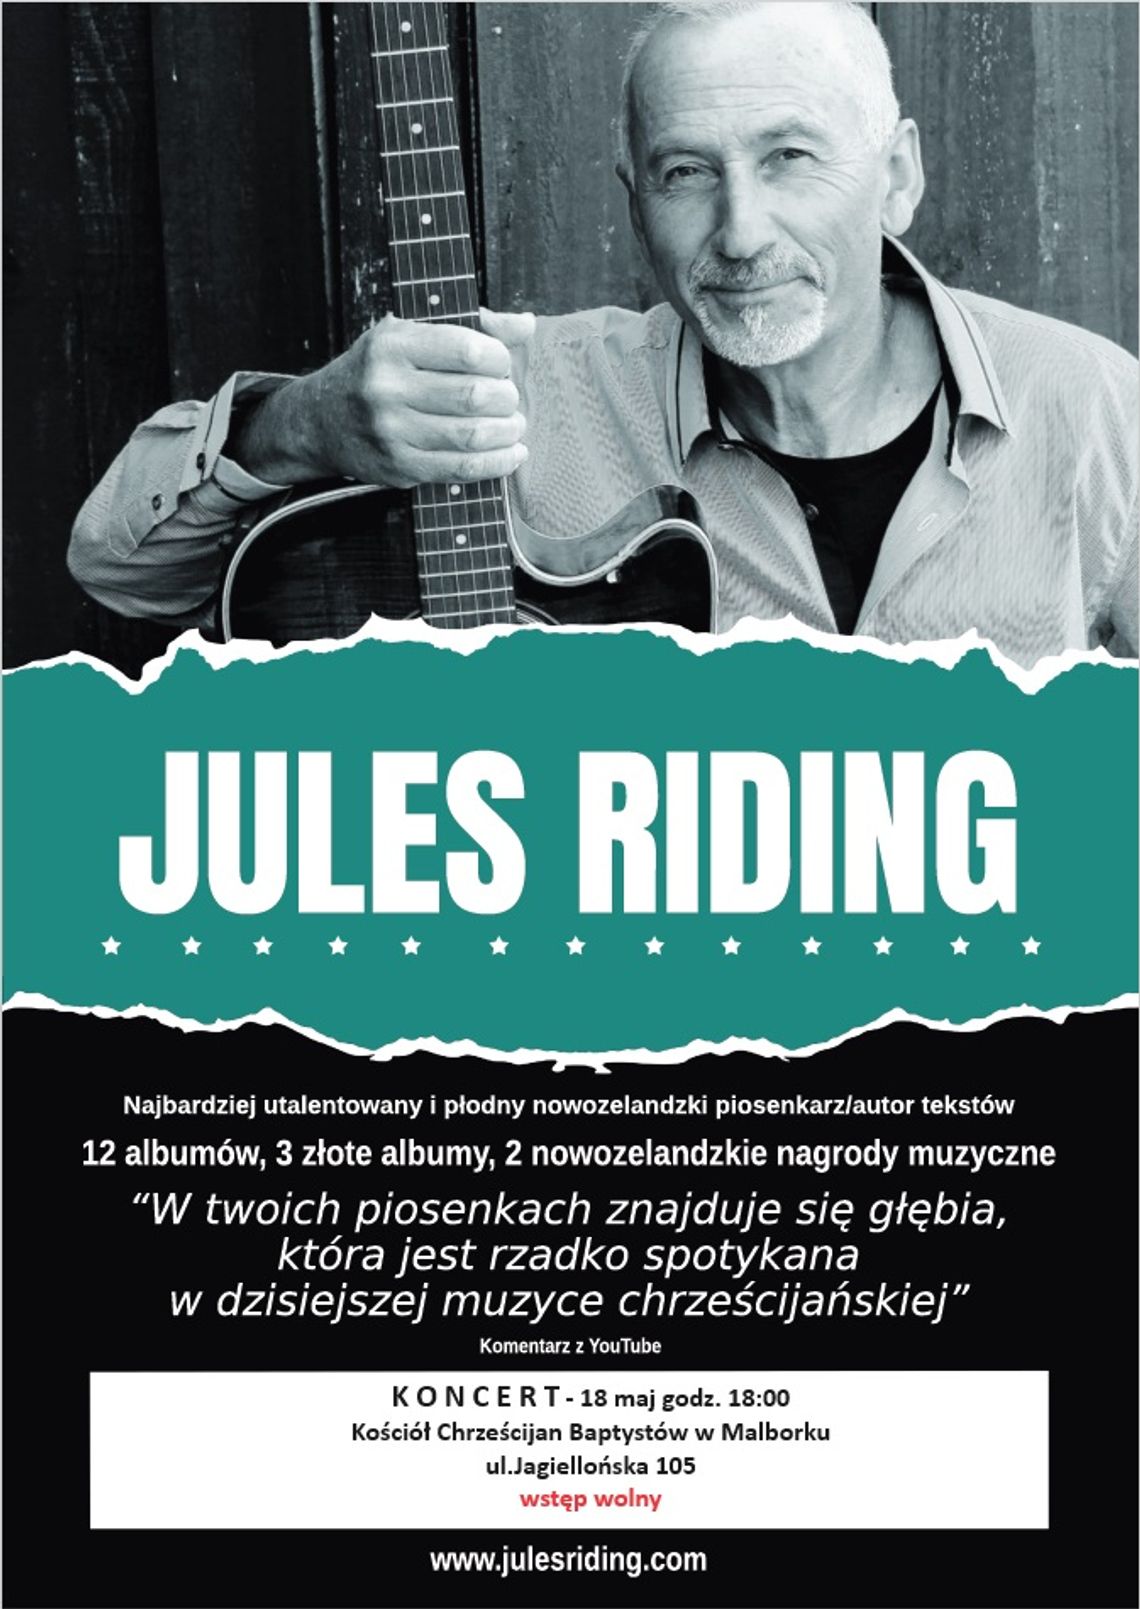 Jules Riding, piosenkarz gospel z Nowej Zelandii ponownie w Malborku!